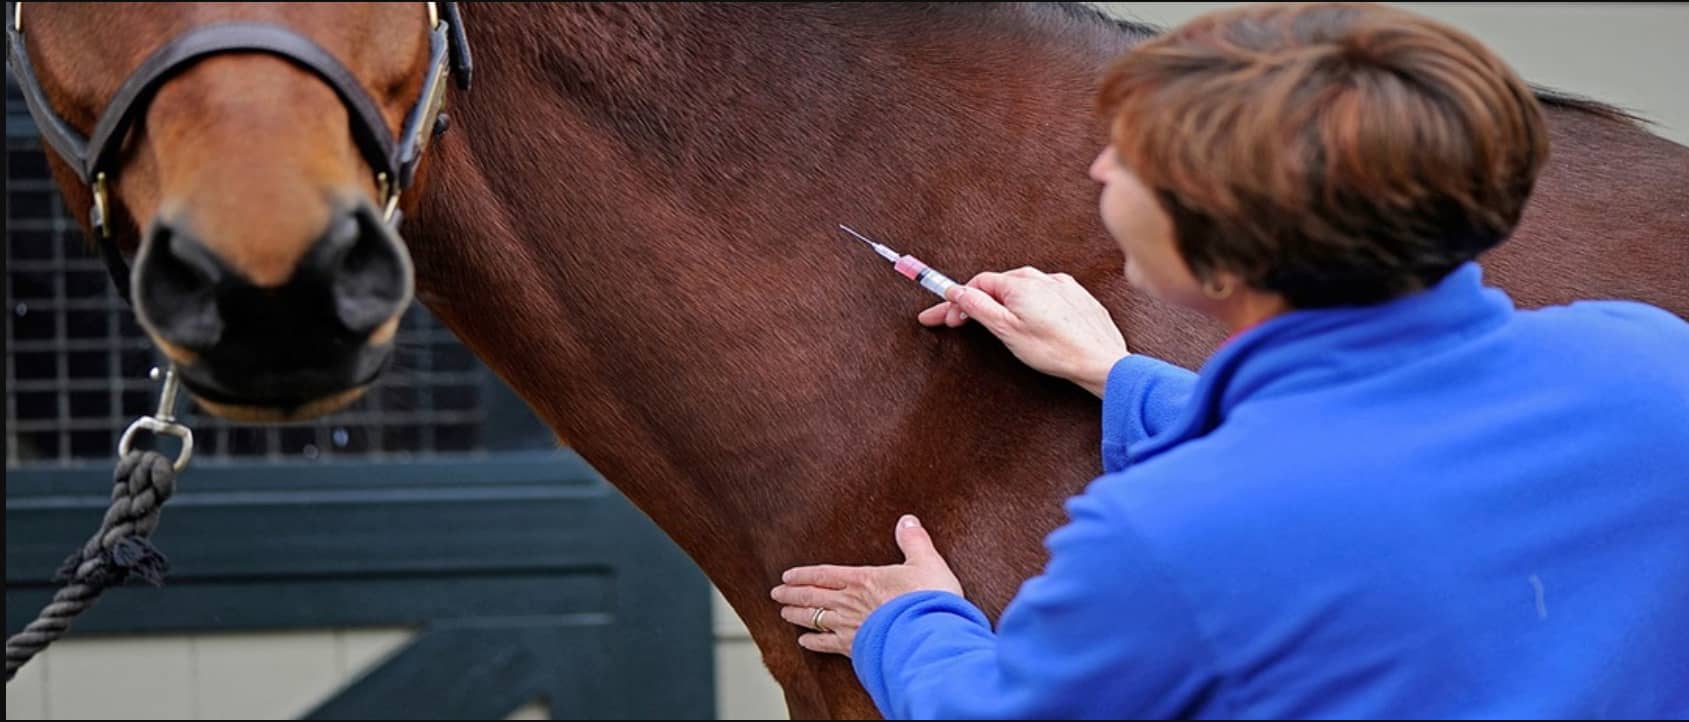 Quando um cavalo é afetado pela Influenza, sua susceptibilidade a infecções secundárias, como pneumonia, aumenta significativamente. Tais complicações...